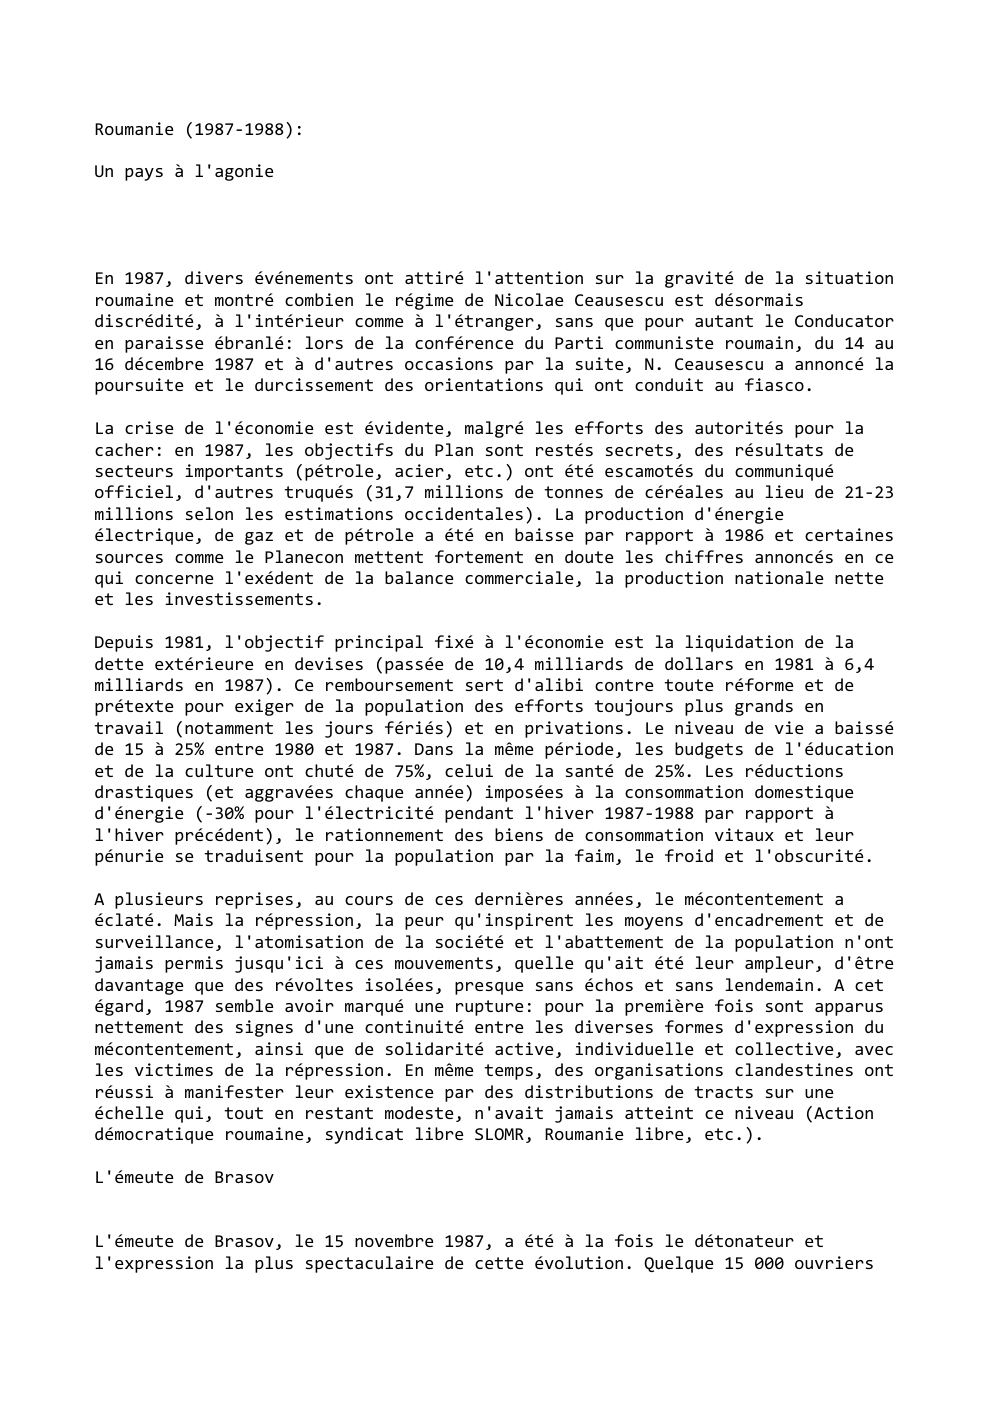 Prévisualisation du document Roumanie (1987-1988):
Un pays à l'agonie

En 1987, divers événements ont attiré l'attention sur la gravité de la situation
roumaine...